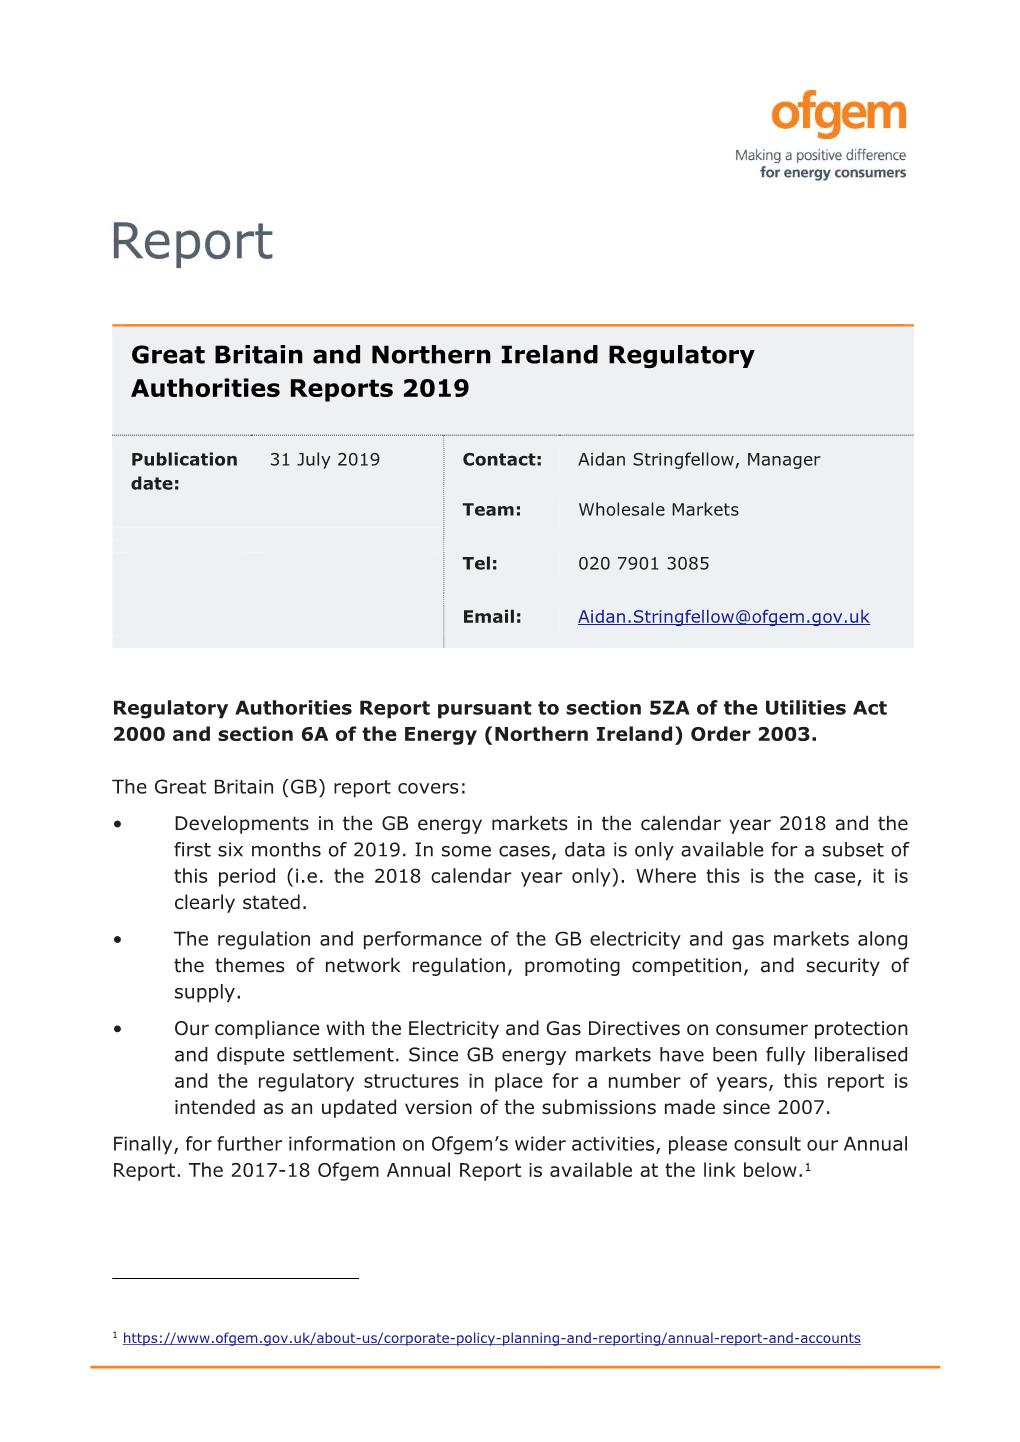 Great Britain and Northern Ireland Regulatory Authorities Reports 2019